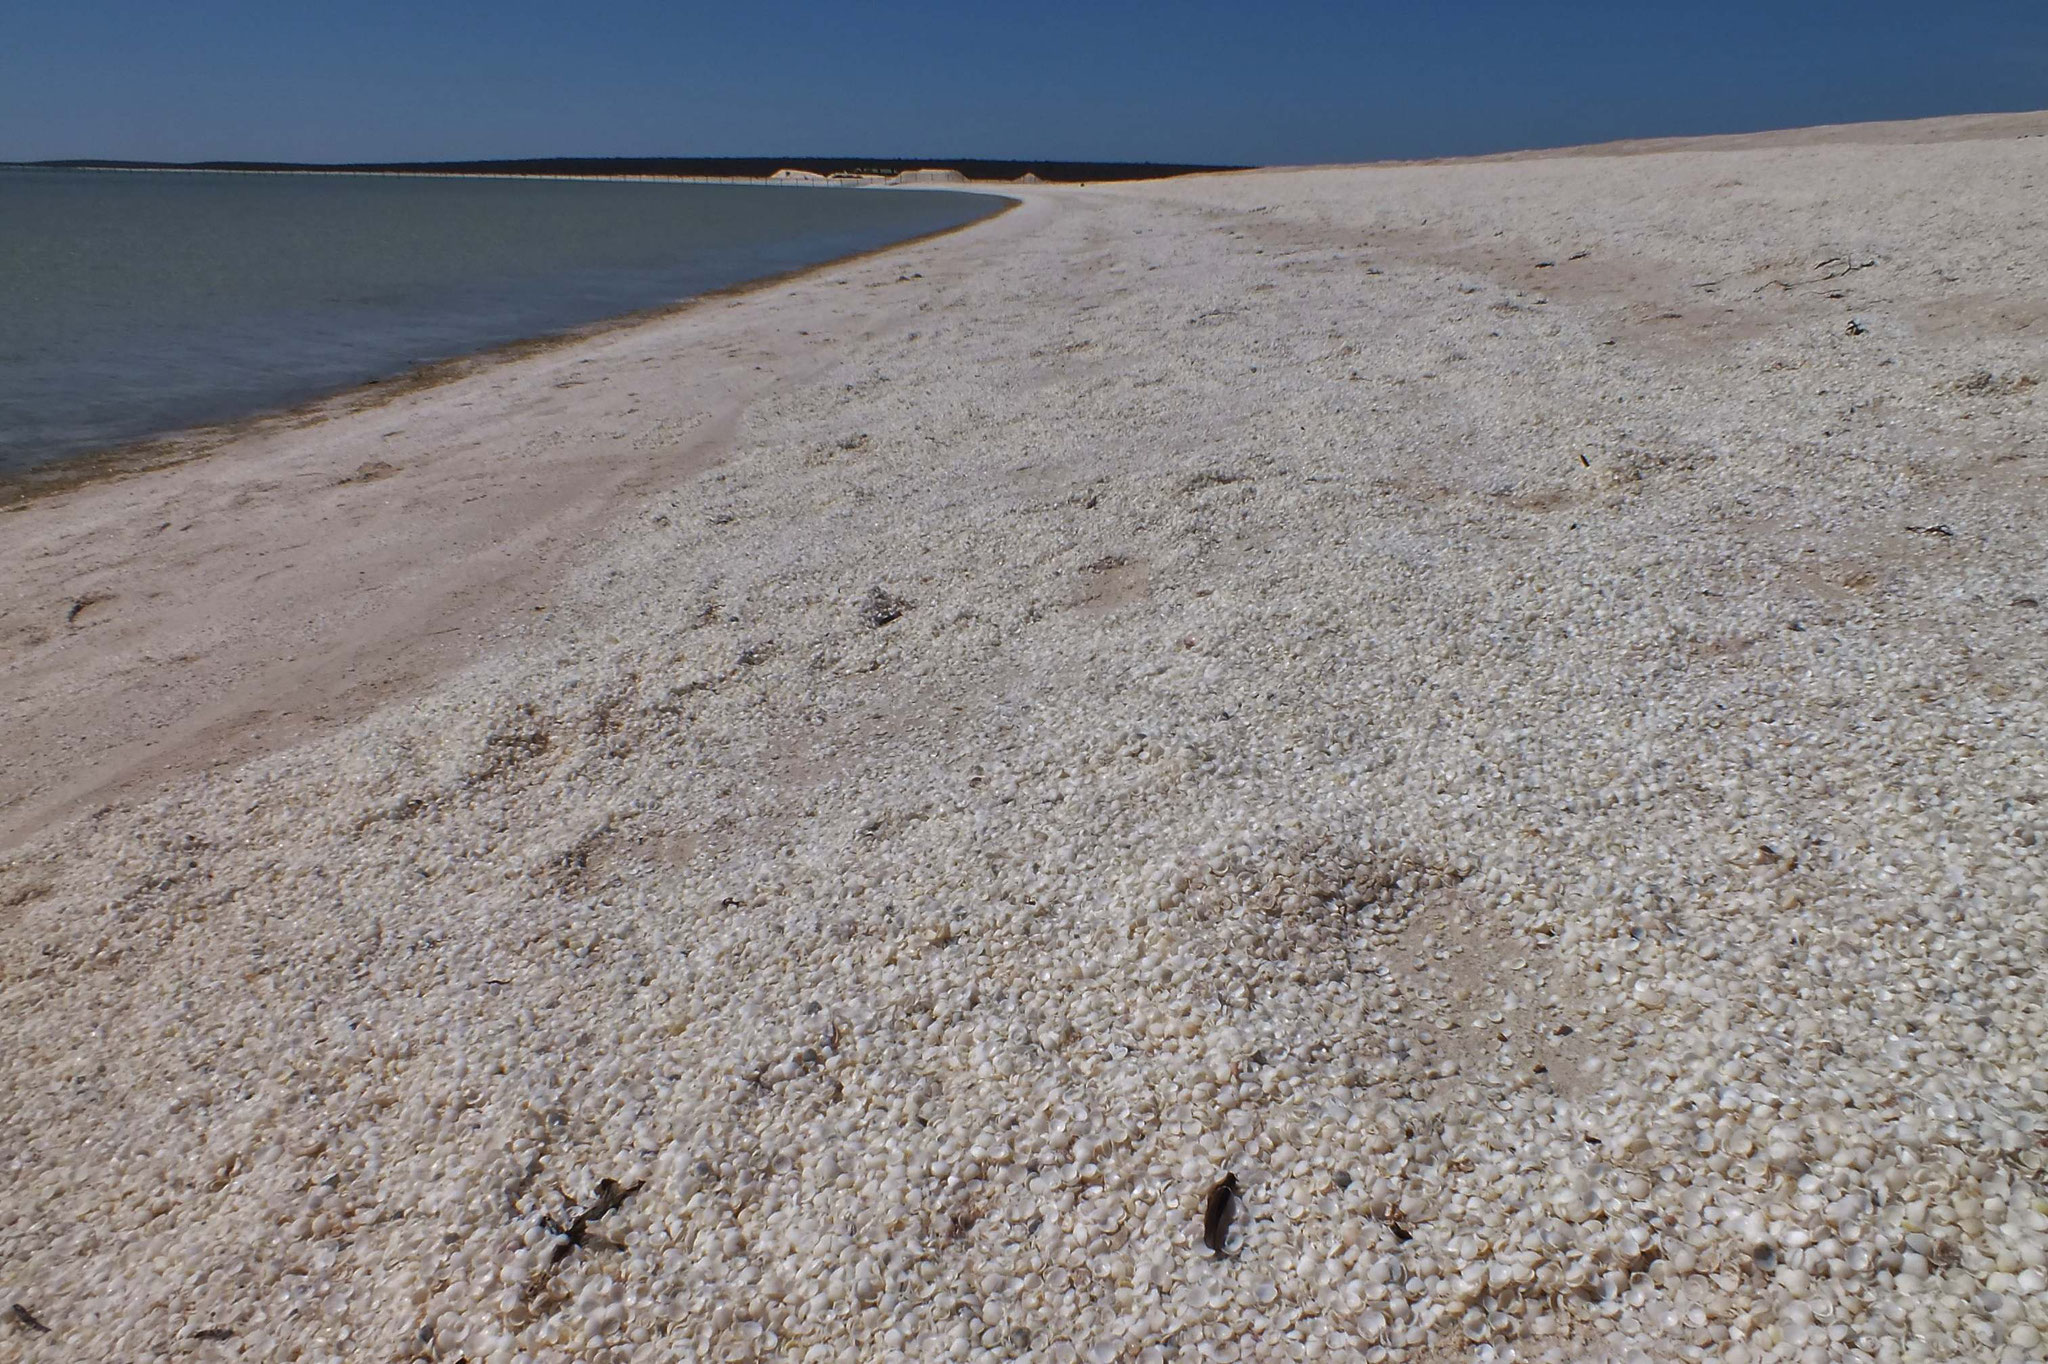 Muschelstrand - Millionen oder gar Milliarden Muscheln annähernd gleicher Größe anstelle Sand säumen die Küste